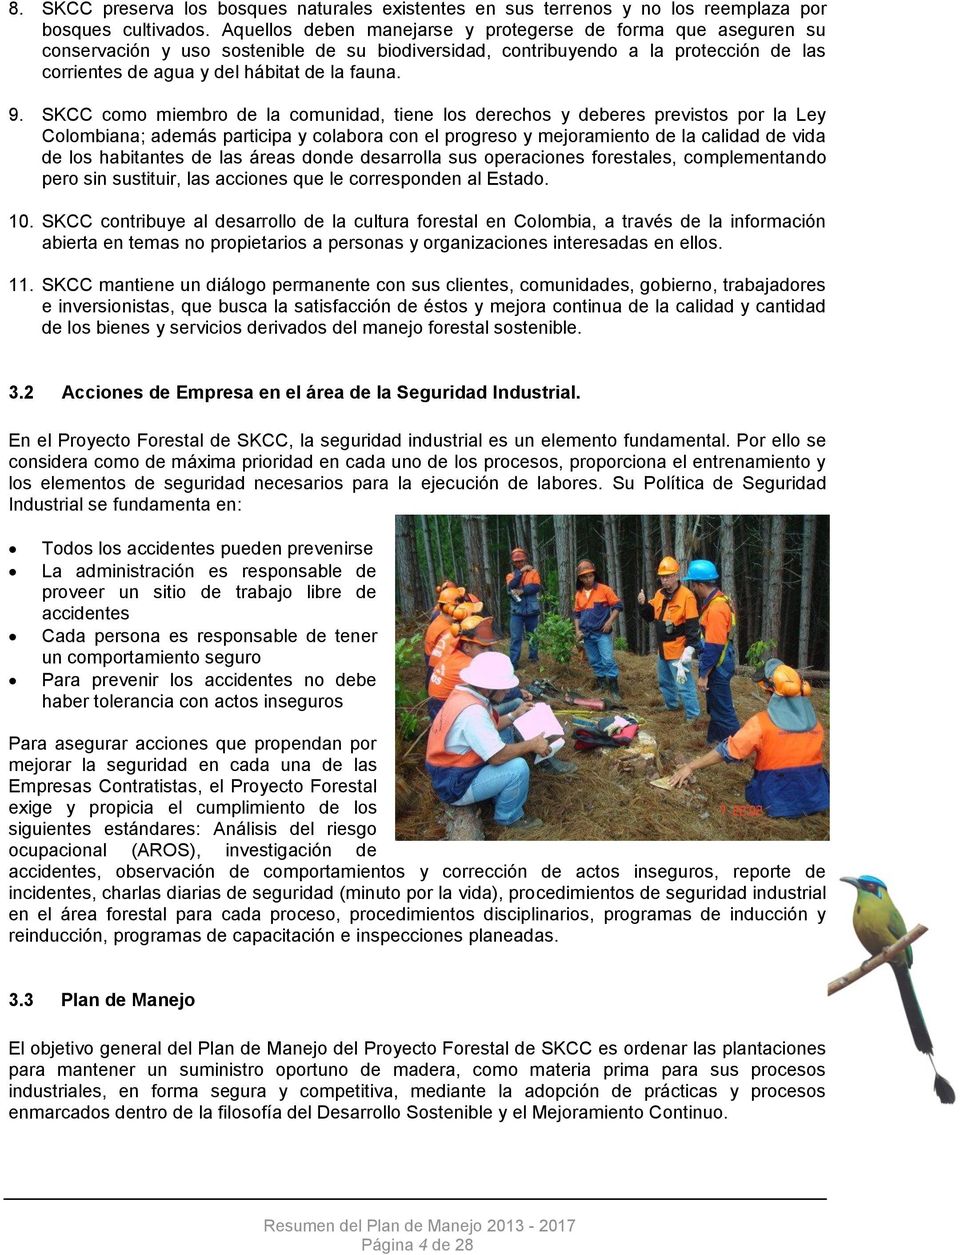 SKCC como miembro de la comunidad, tiene los derechos y deberes previstos por la Ley Colombiana; además participa y colabora con el progreso y mejoramiento de la calidad de vida de los habitantes de